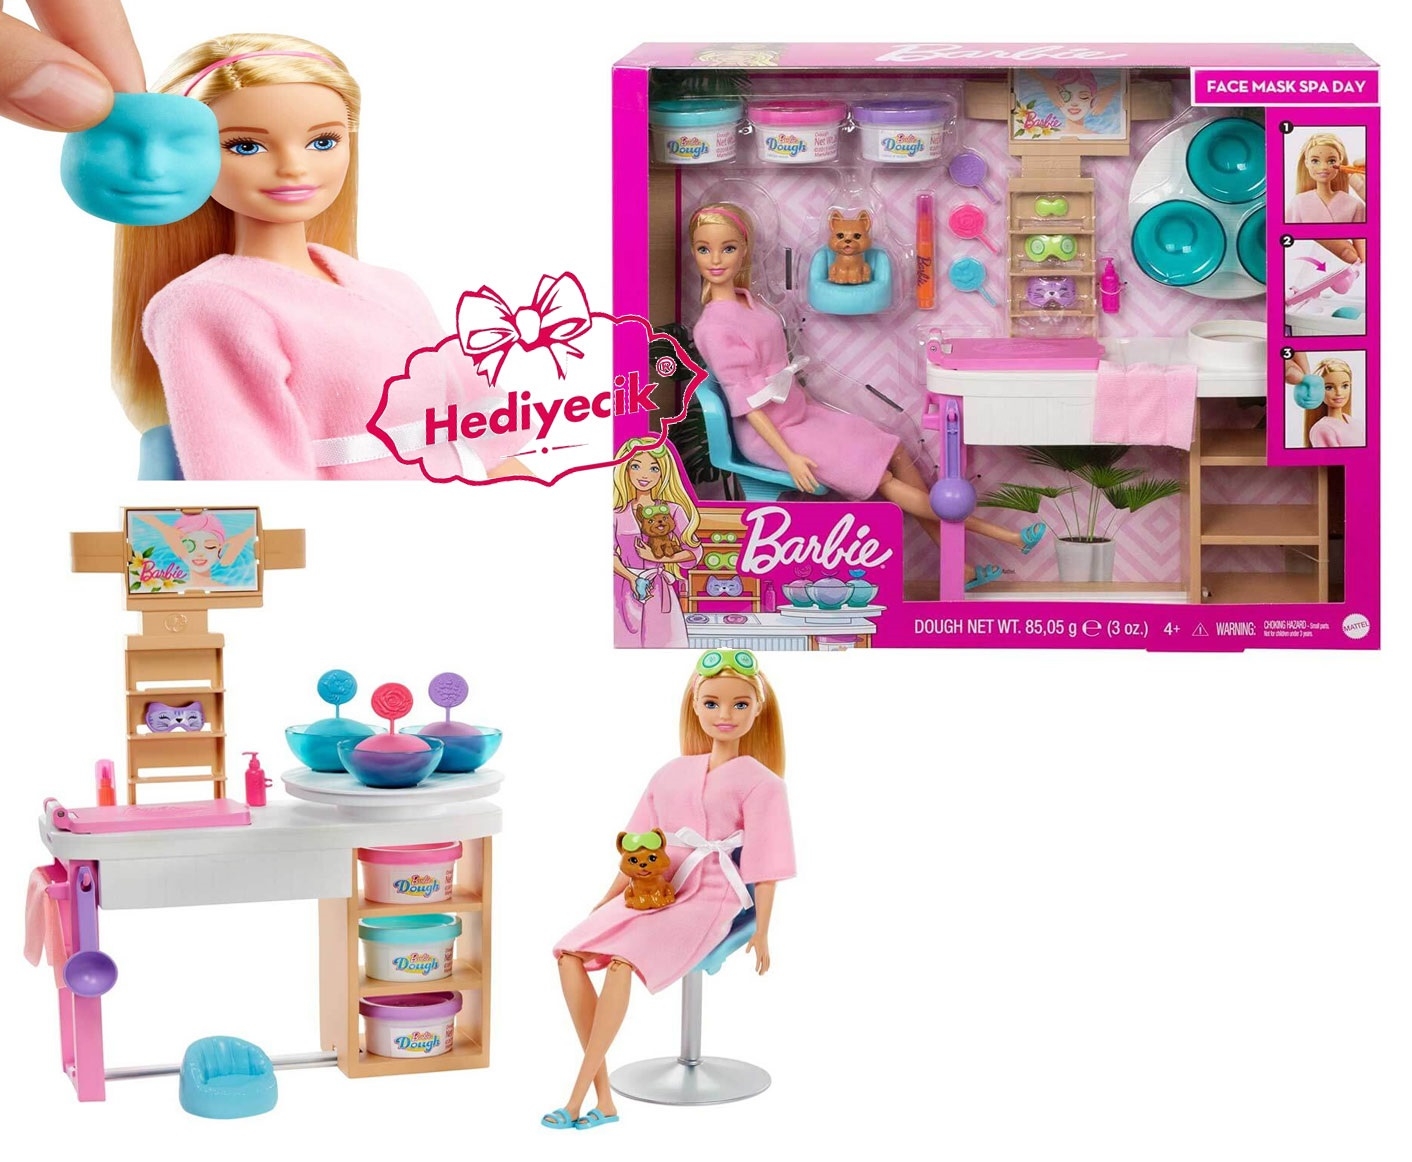 Oyuncak Barbie Yuz Bakimi Yapiyor Oyun Seti Gjr84 En Uygun Fiyat Ve Ayni Gun Kargo Avantaji Ile Hediyecik Com Da